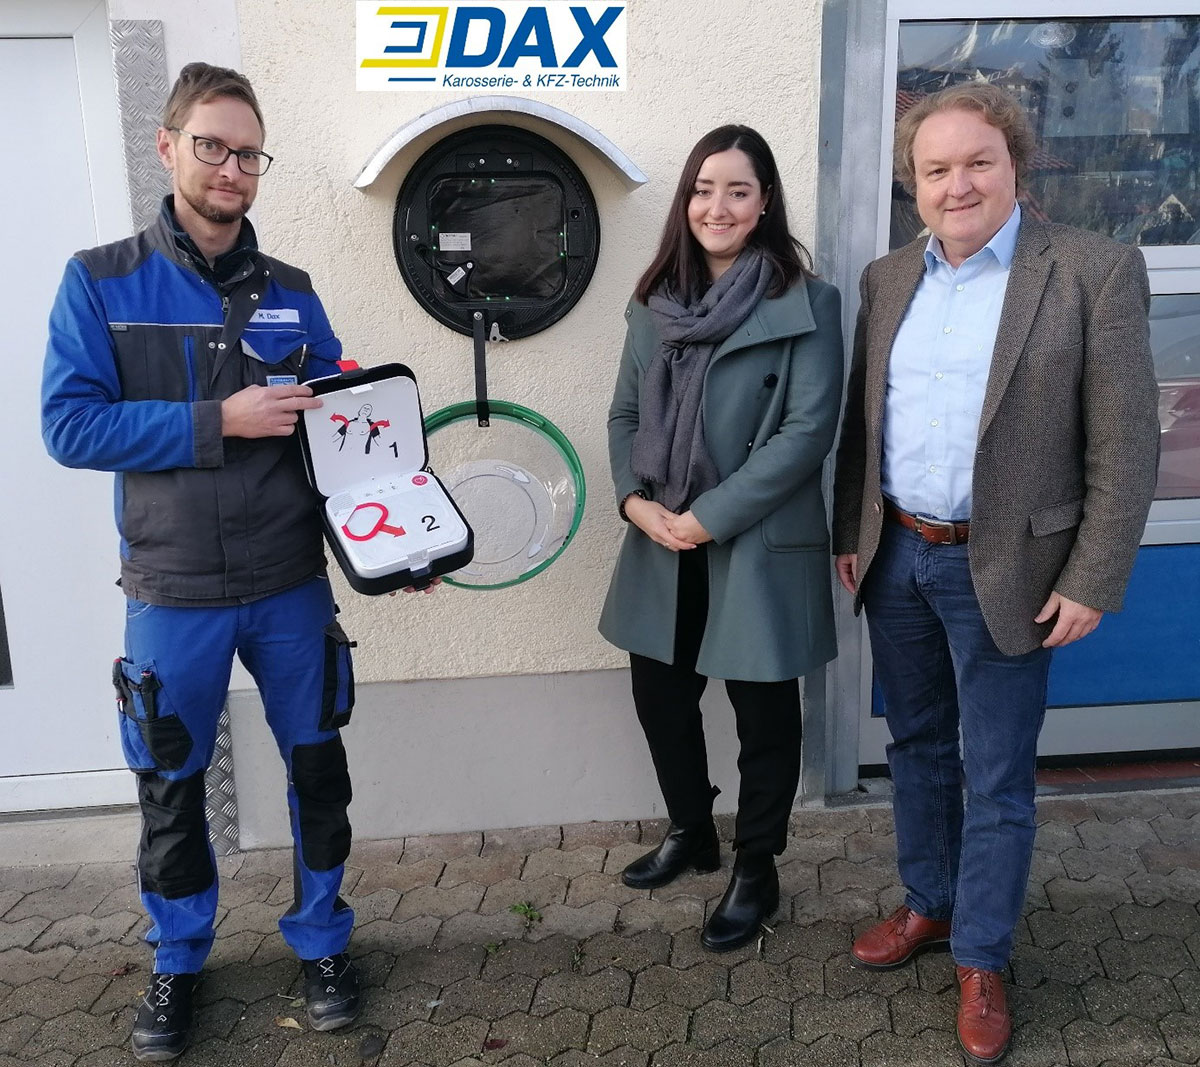 Firma Dax Martin beschafft Automatisierten Externen Defibrillator